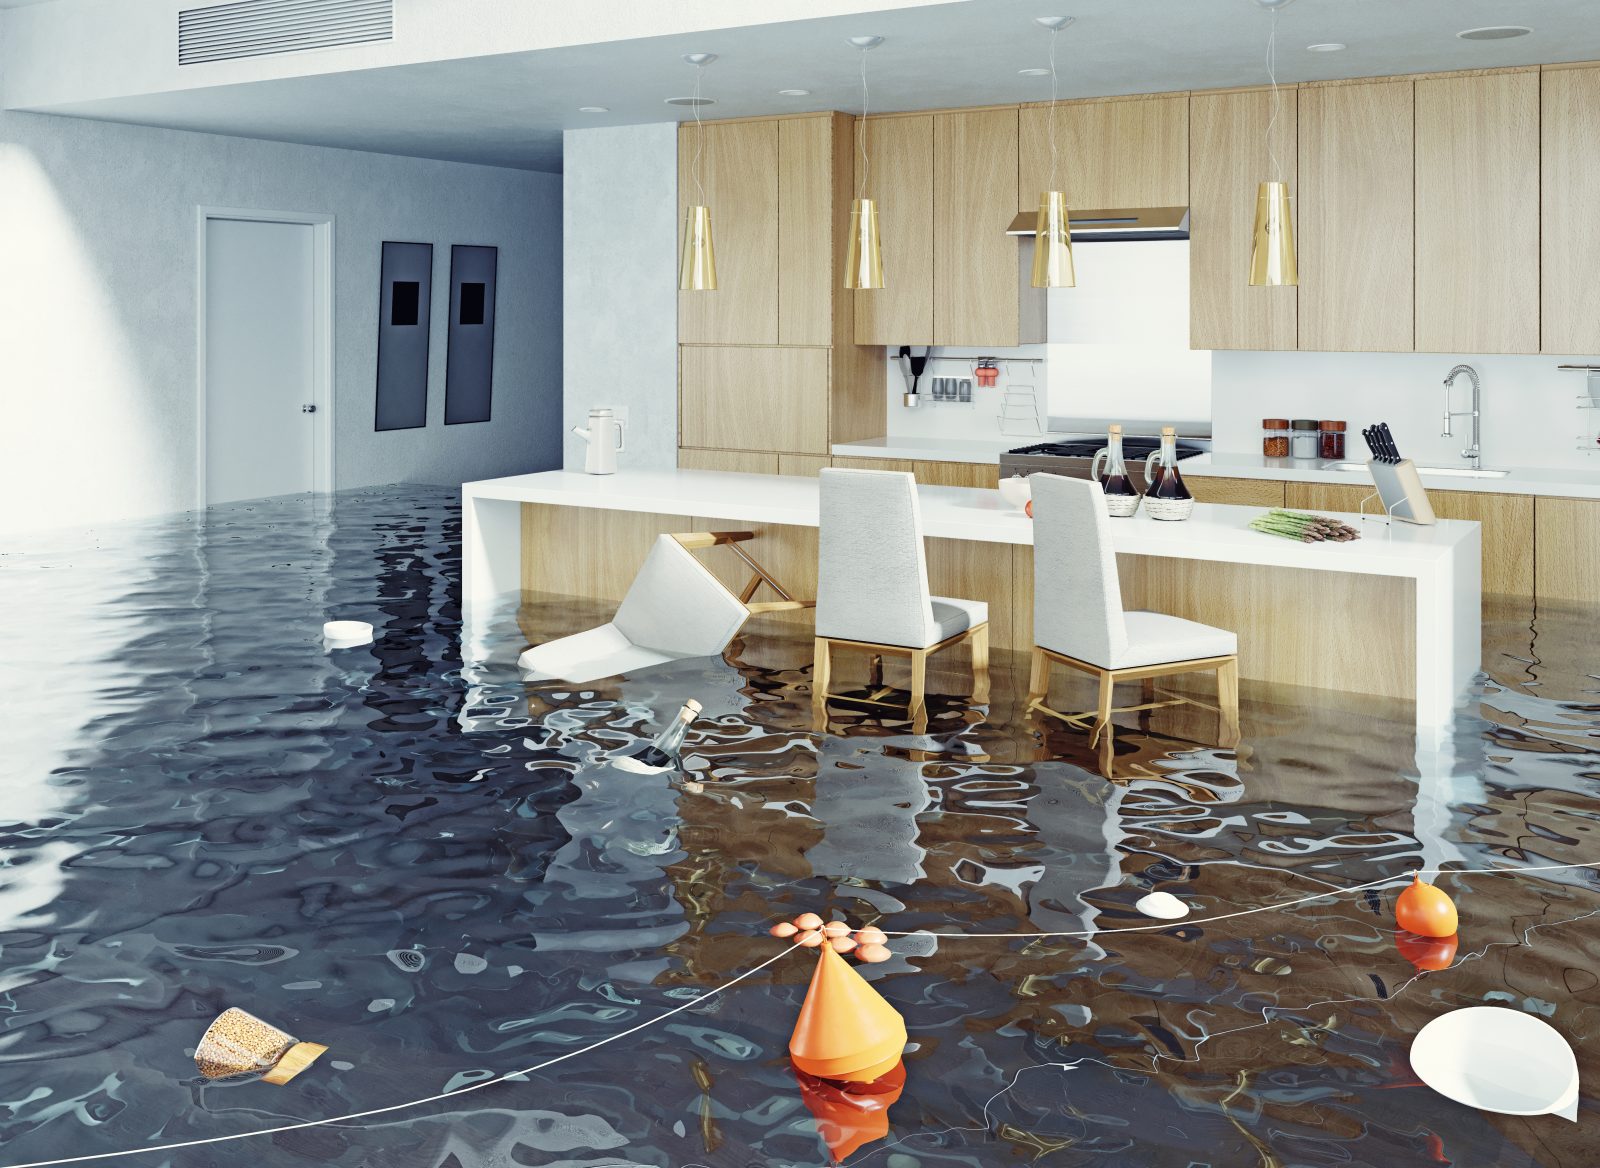 flood light in kitchen